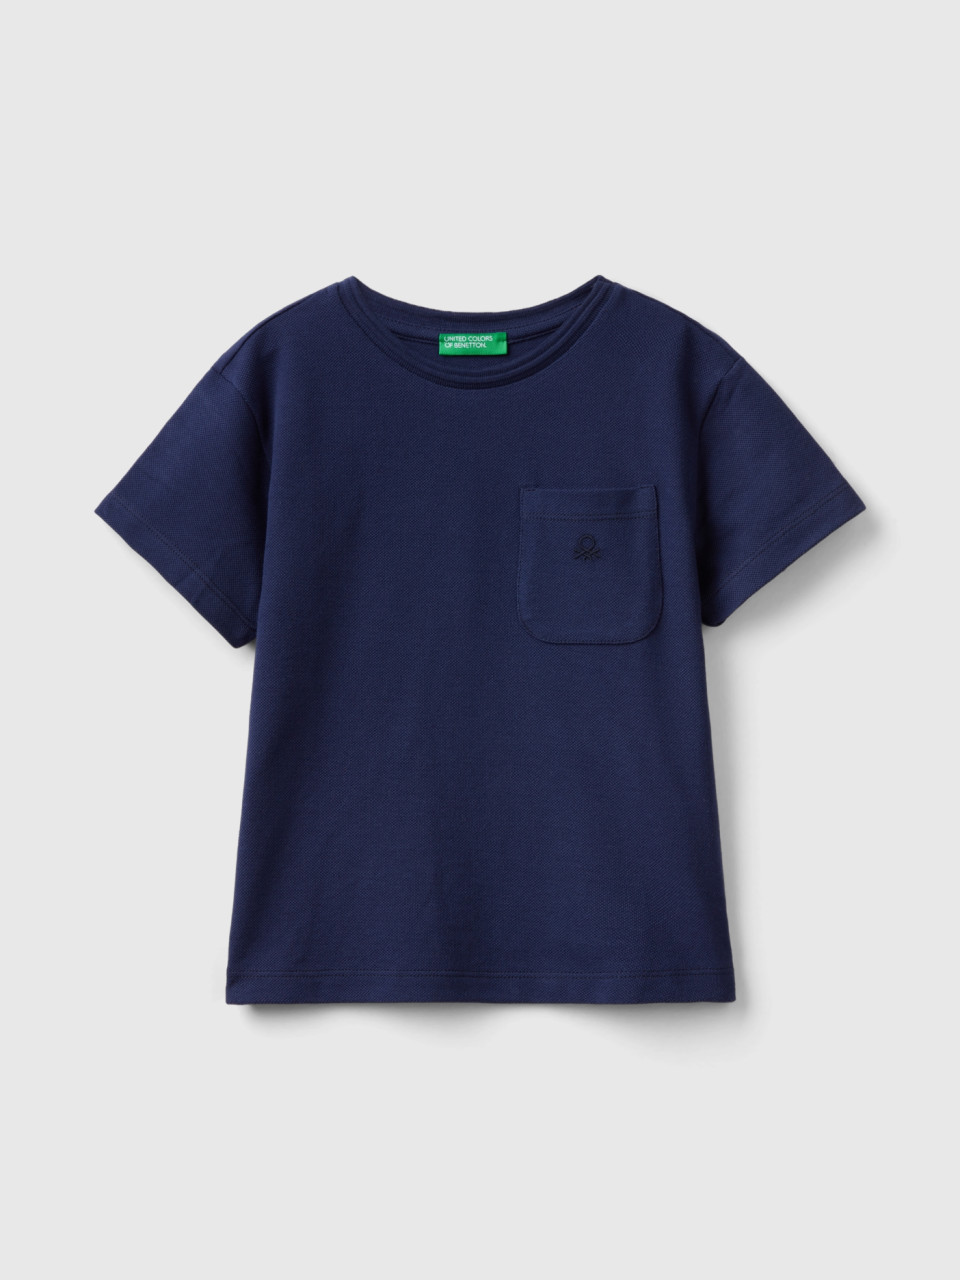 Benetton, T-shirt With Pocket, Dark Blue, Kids